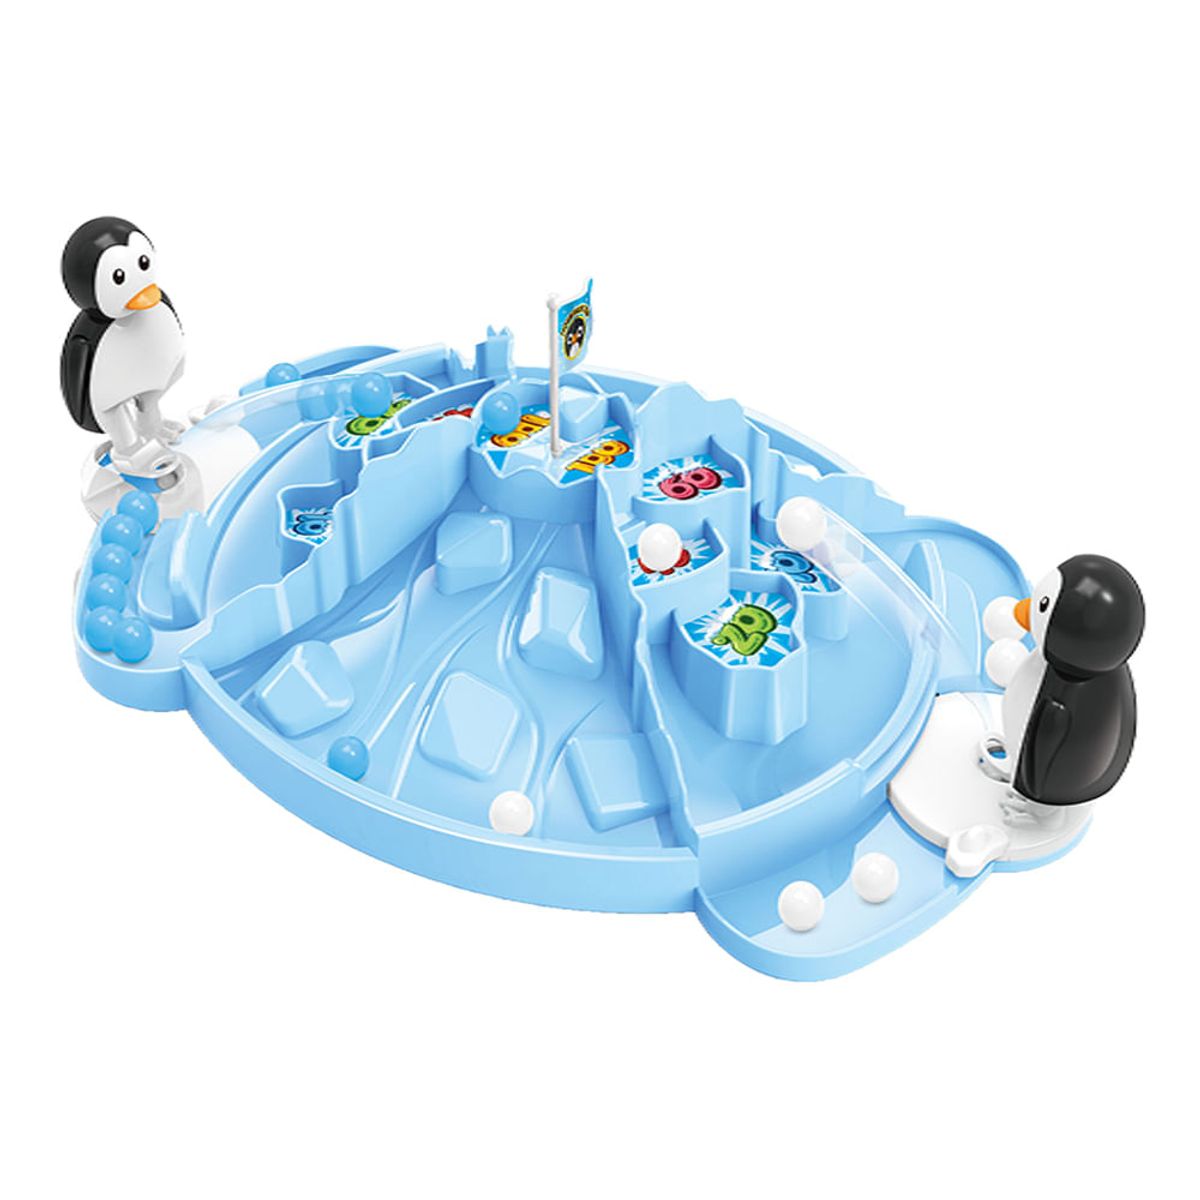 Jogo Pinguim Neve no Alvo - BR1477 - Multikids - Real Brinquedos